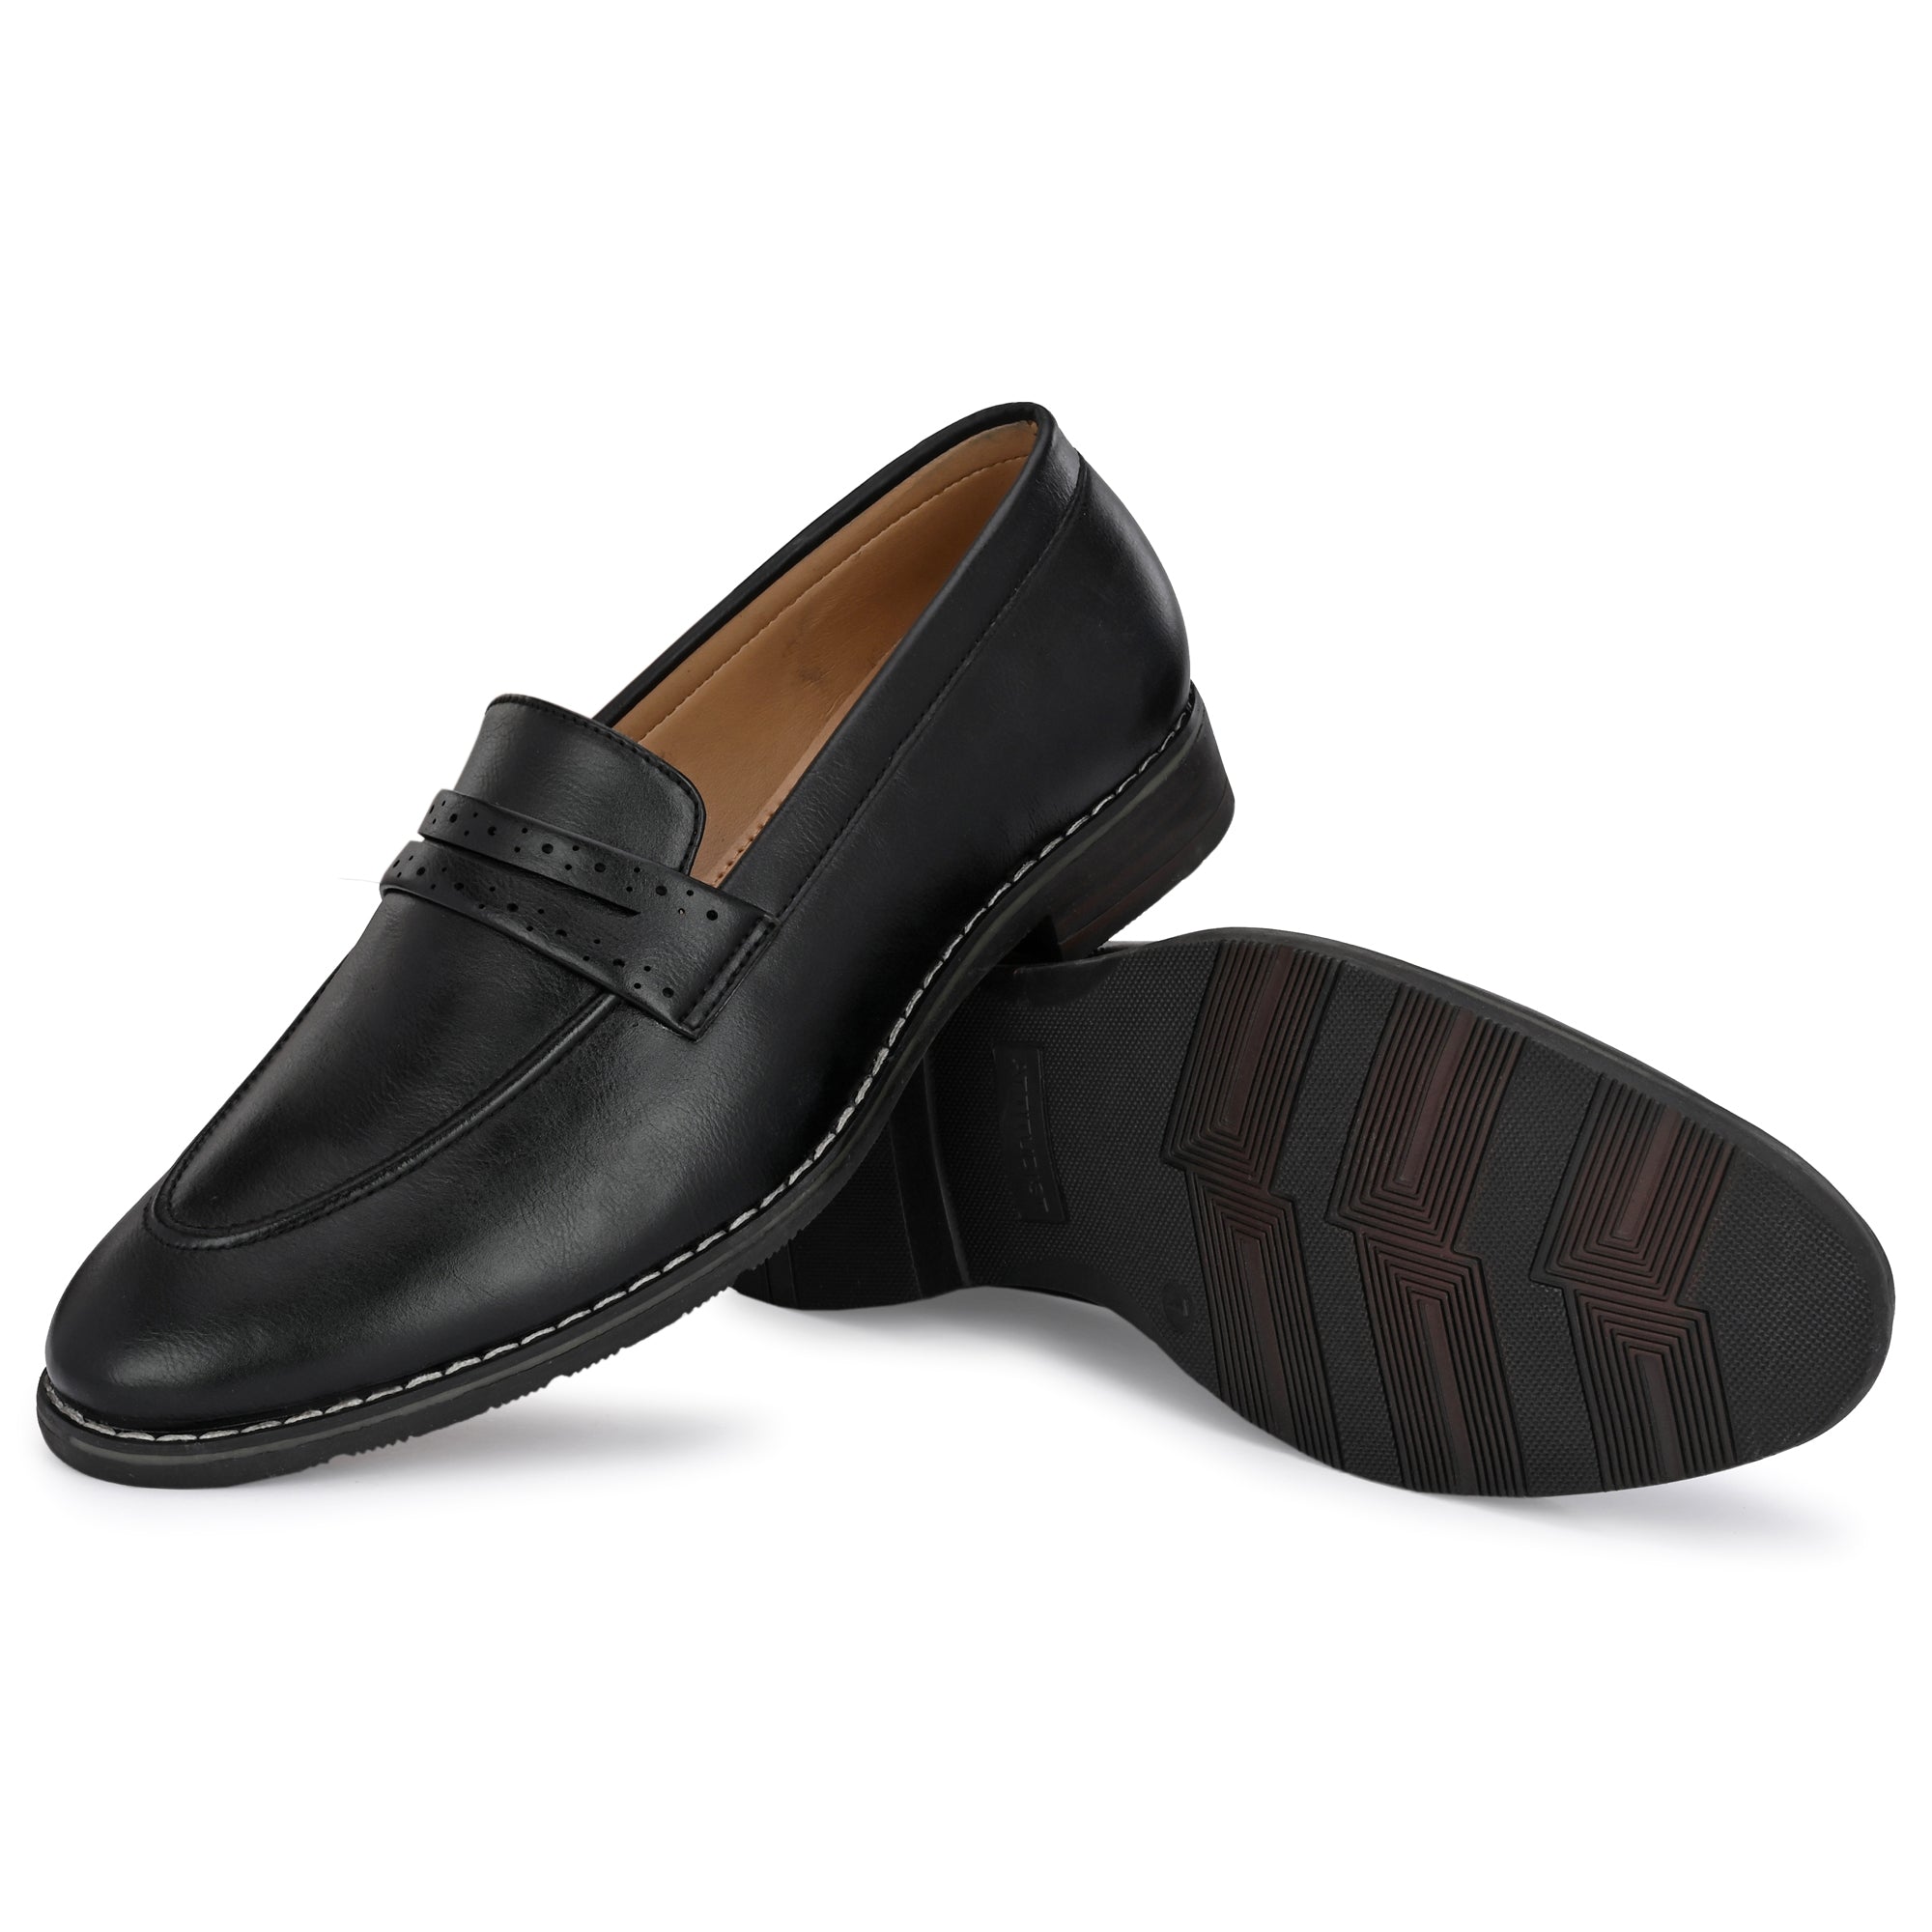 black-loafers-attitudist-shoes-for-men-sp2a